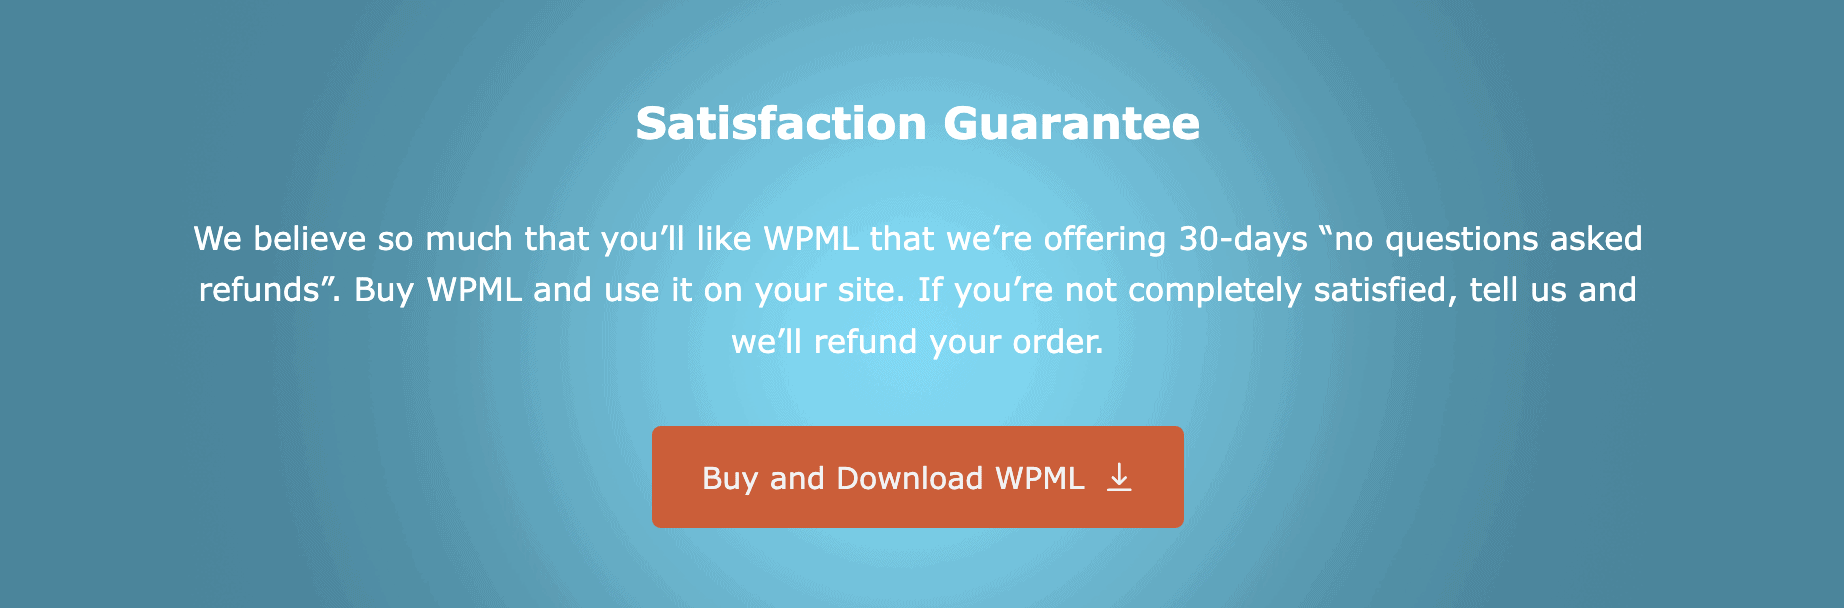 WPML Brand Value